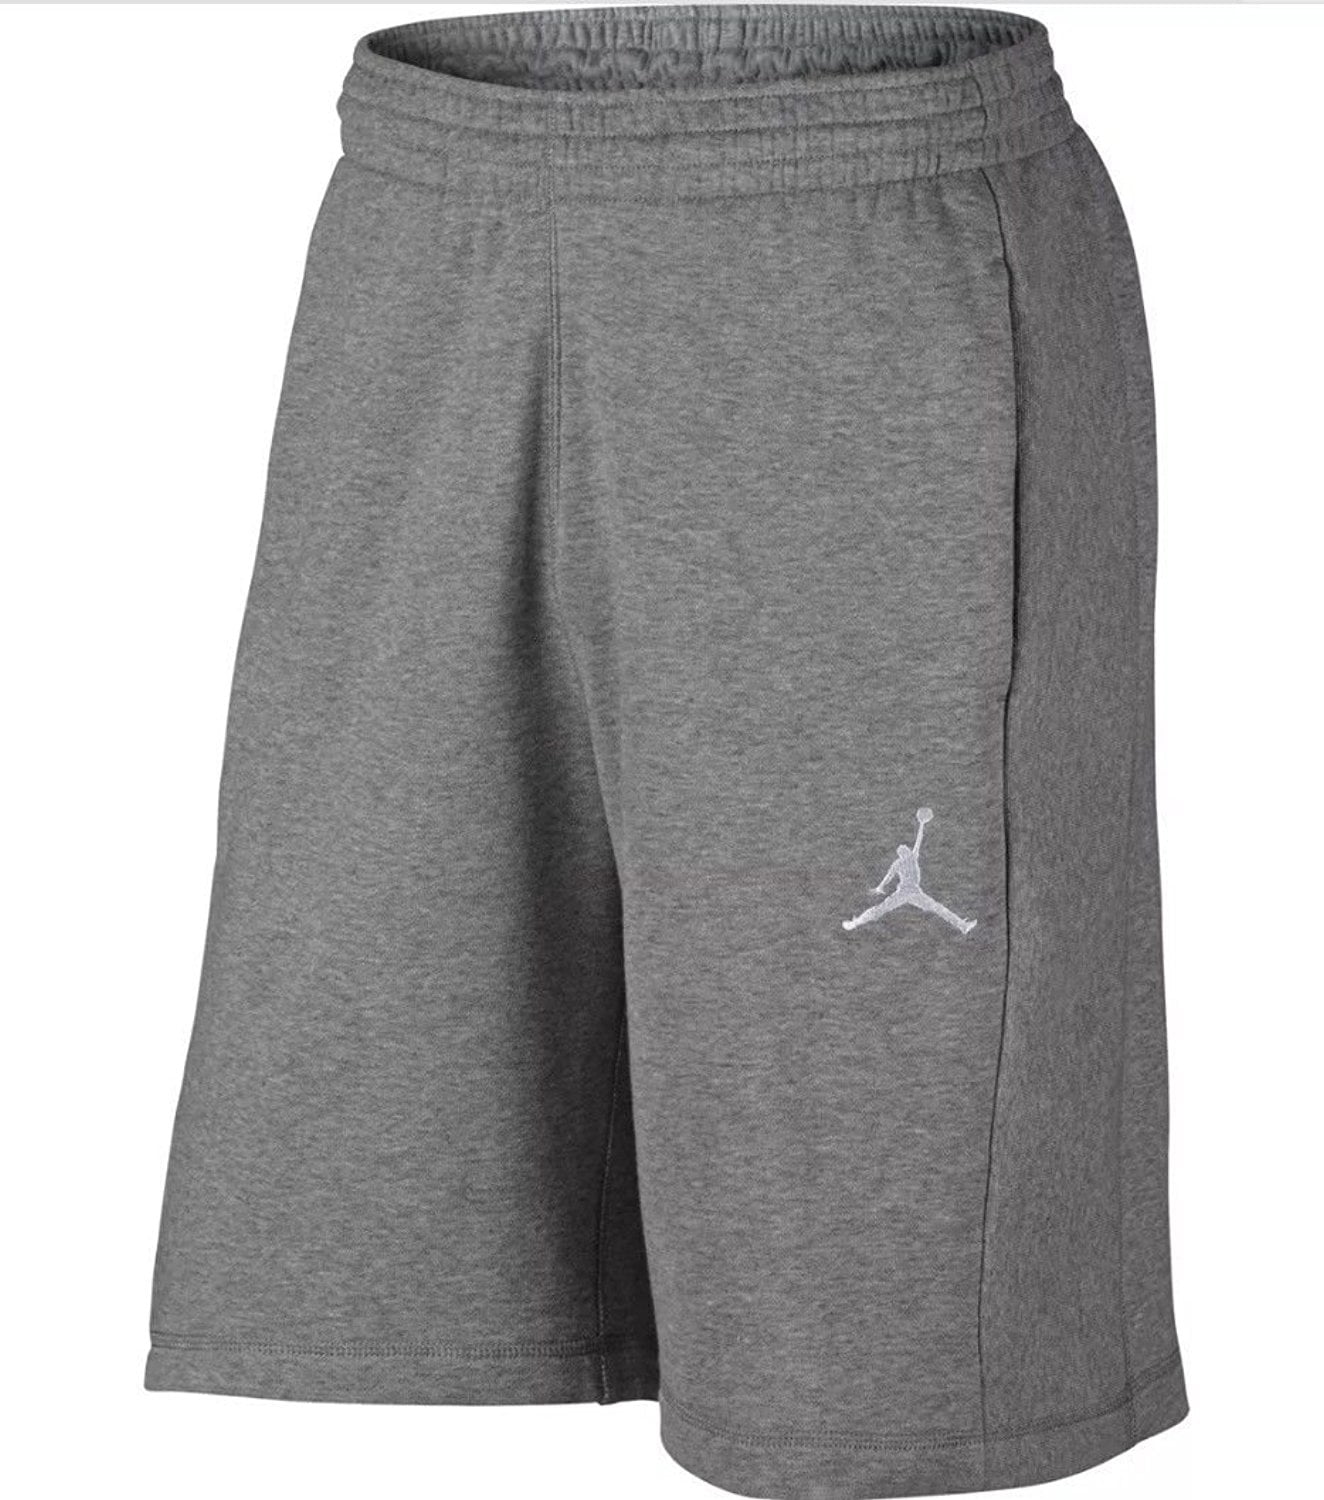 jordan sweat shorts